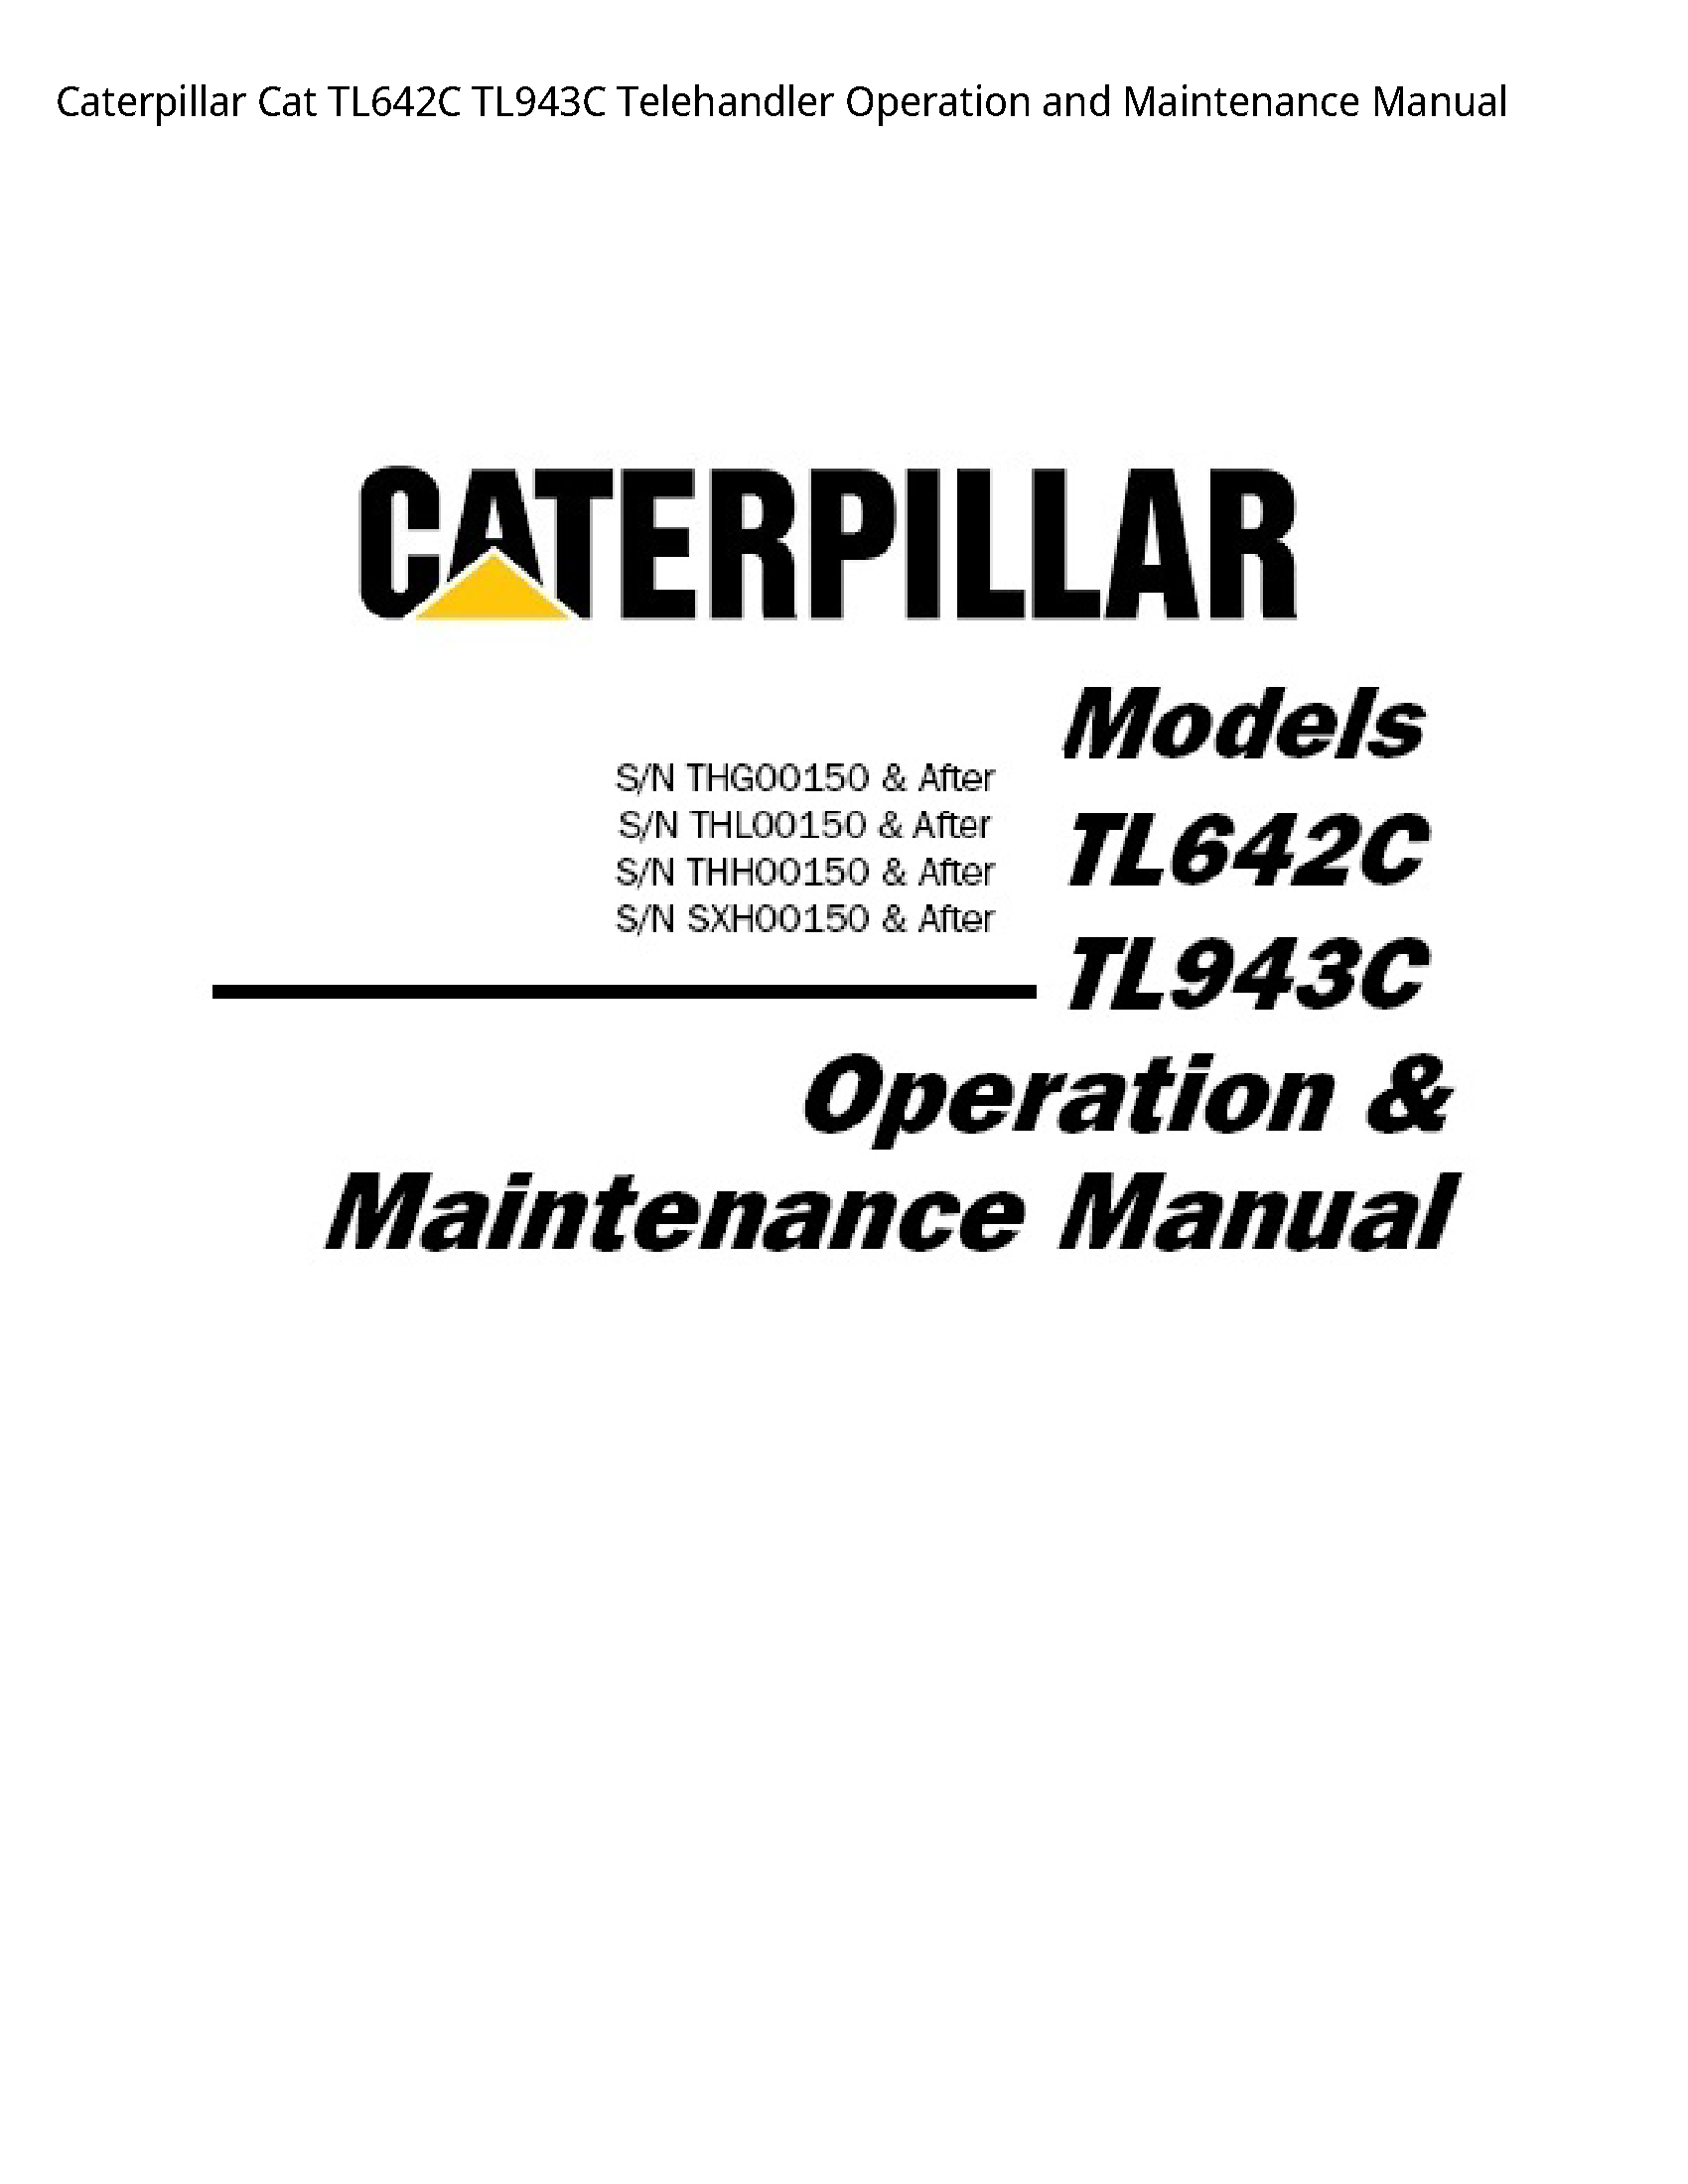 Caterpillar TL642C Cat Telehandler Operation  Maintenance manual